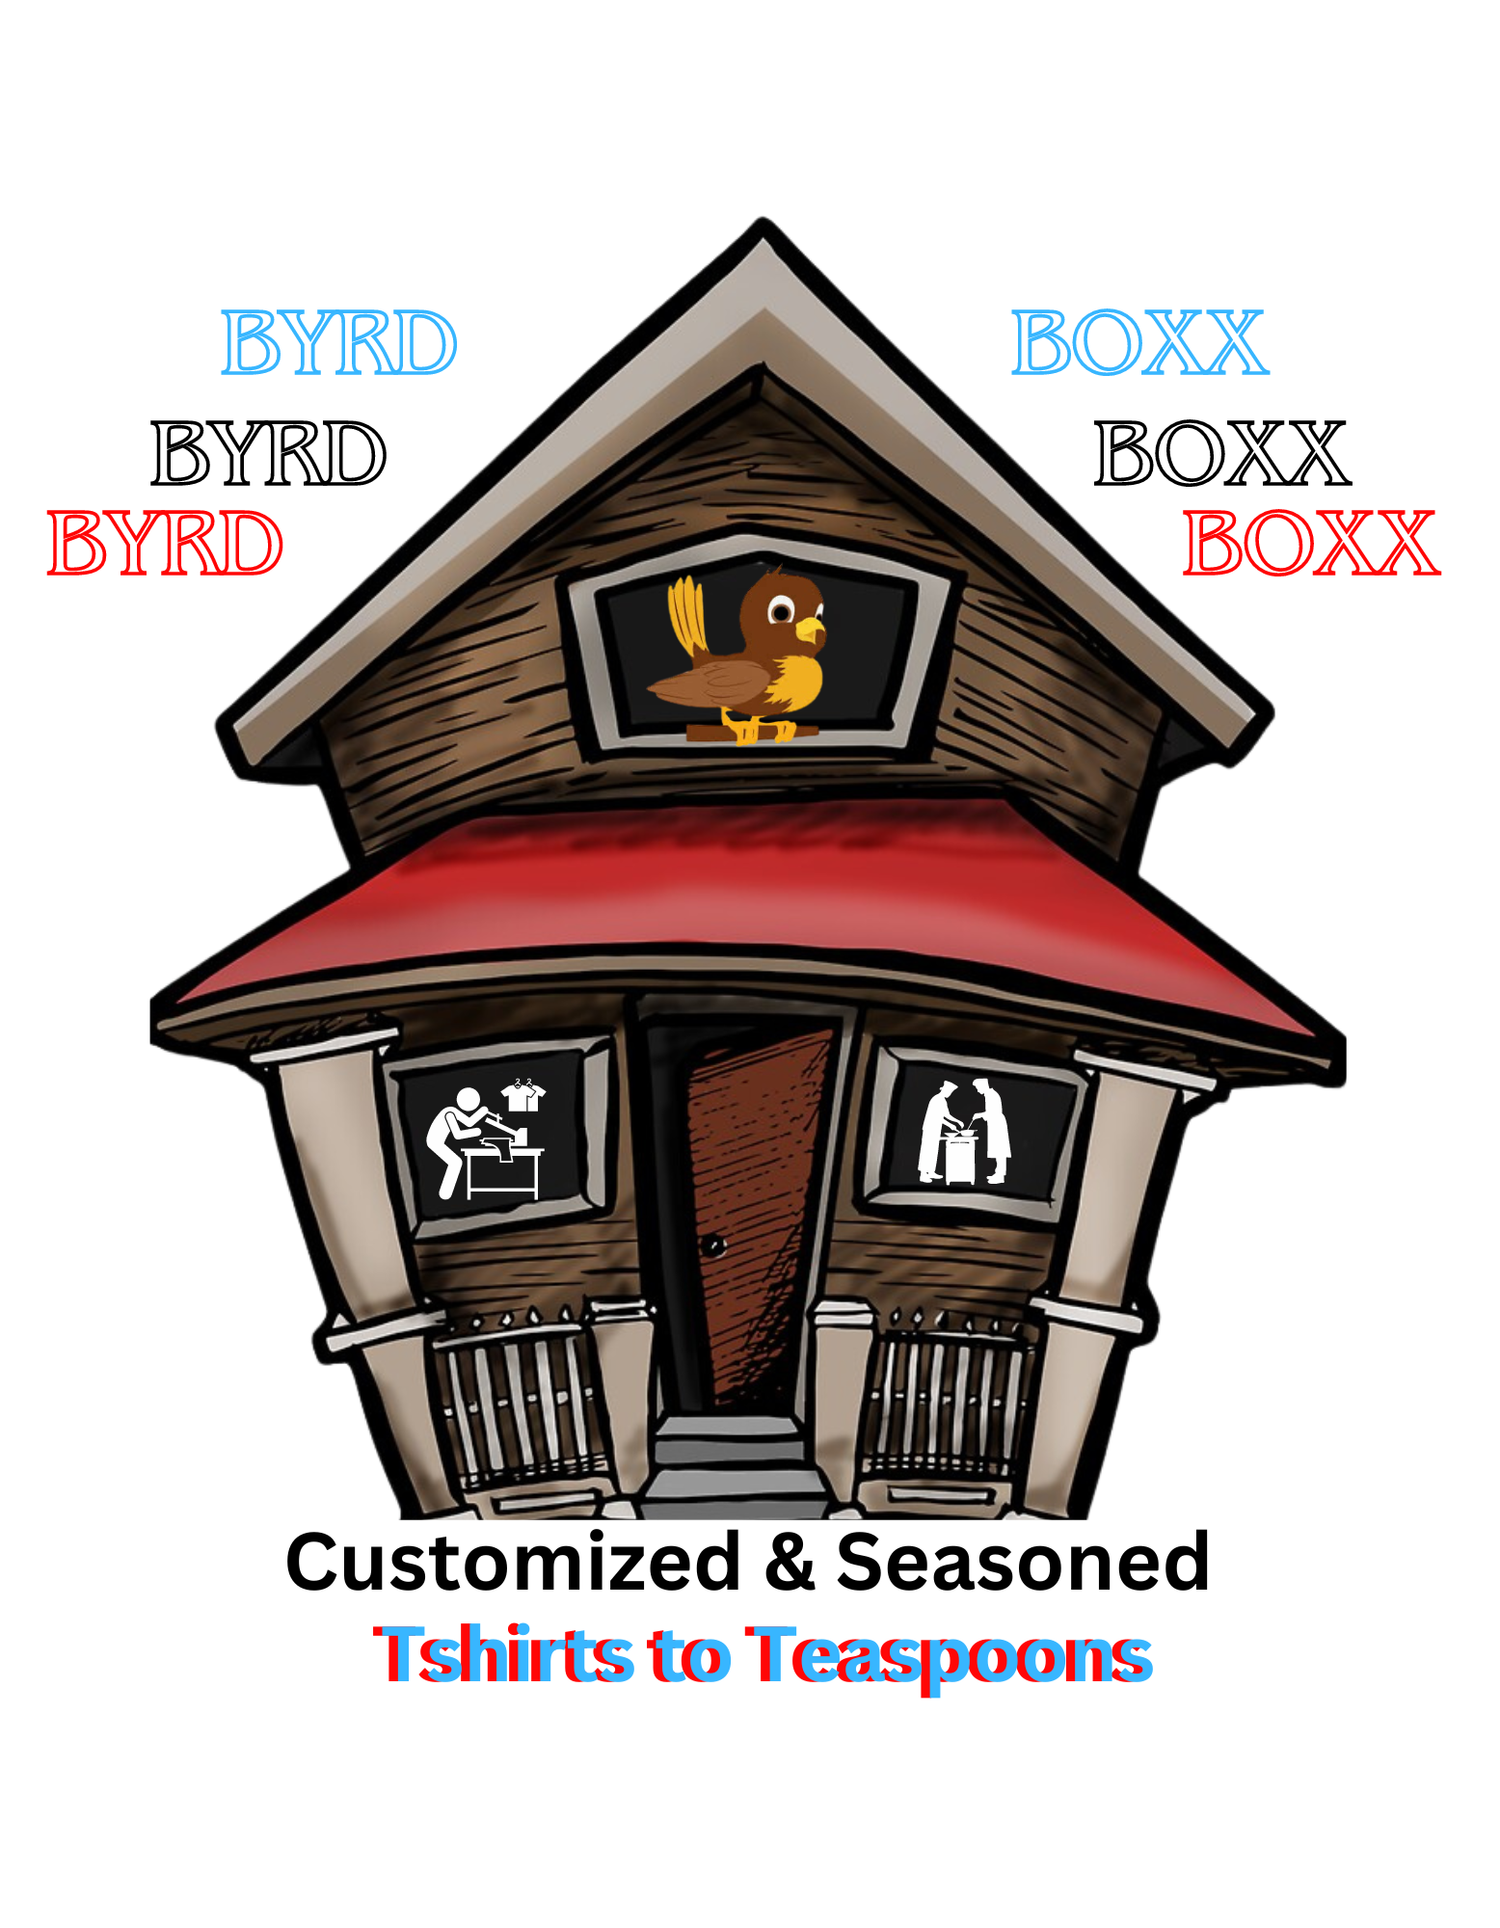 BYRD BOXX